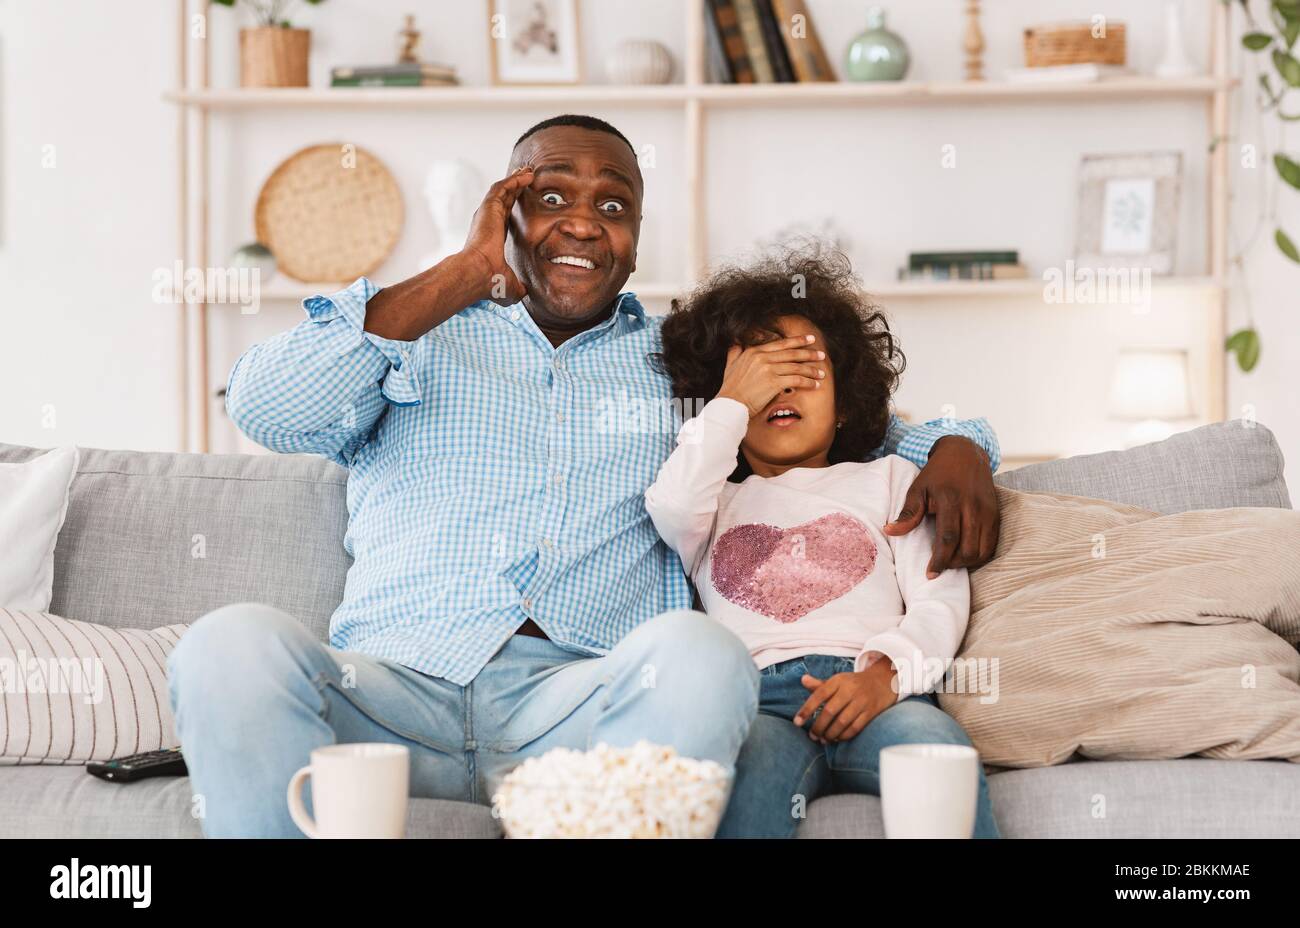 Verrouillez les divertissements familiaux. Un homme afro-américain choqué et une petite-fille effrayée regardant un film effrayant chez soi Banque D'Images